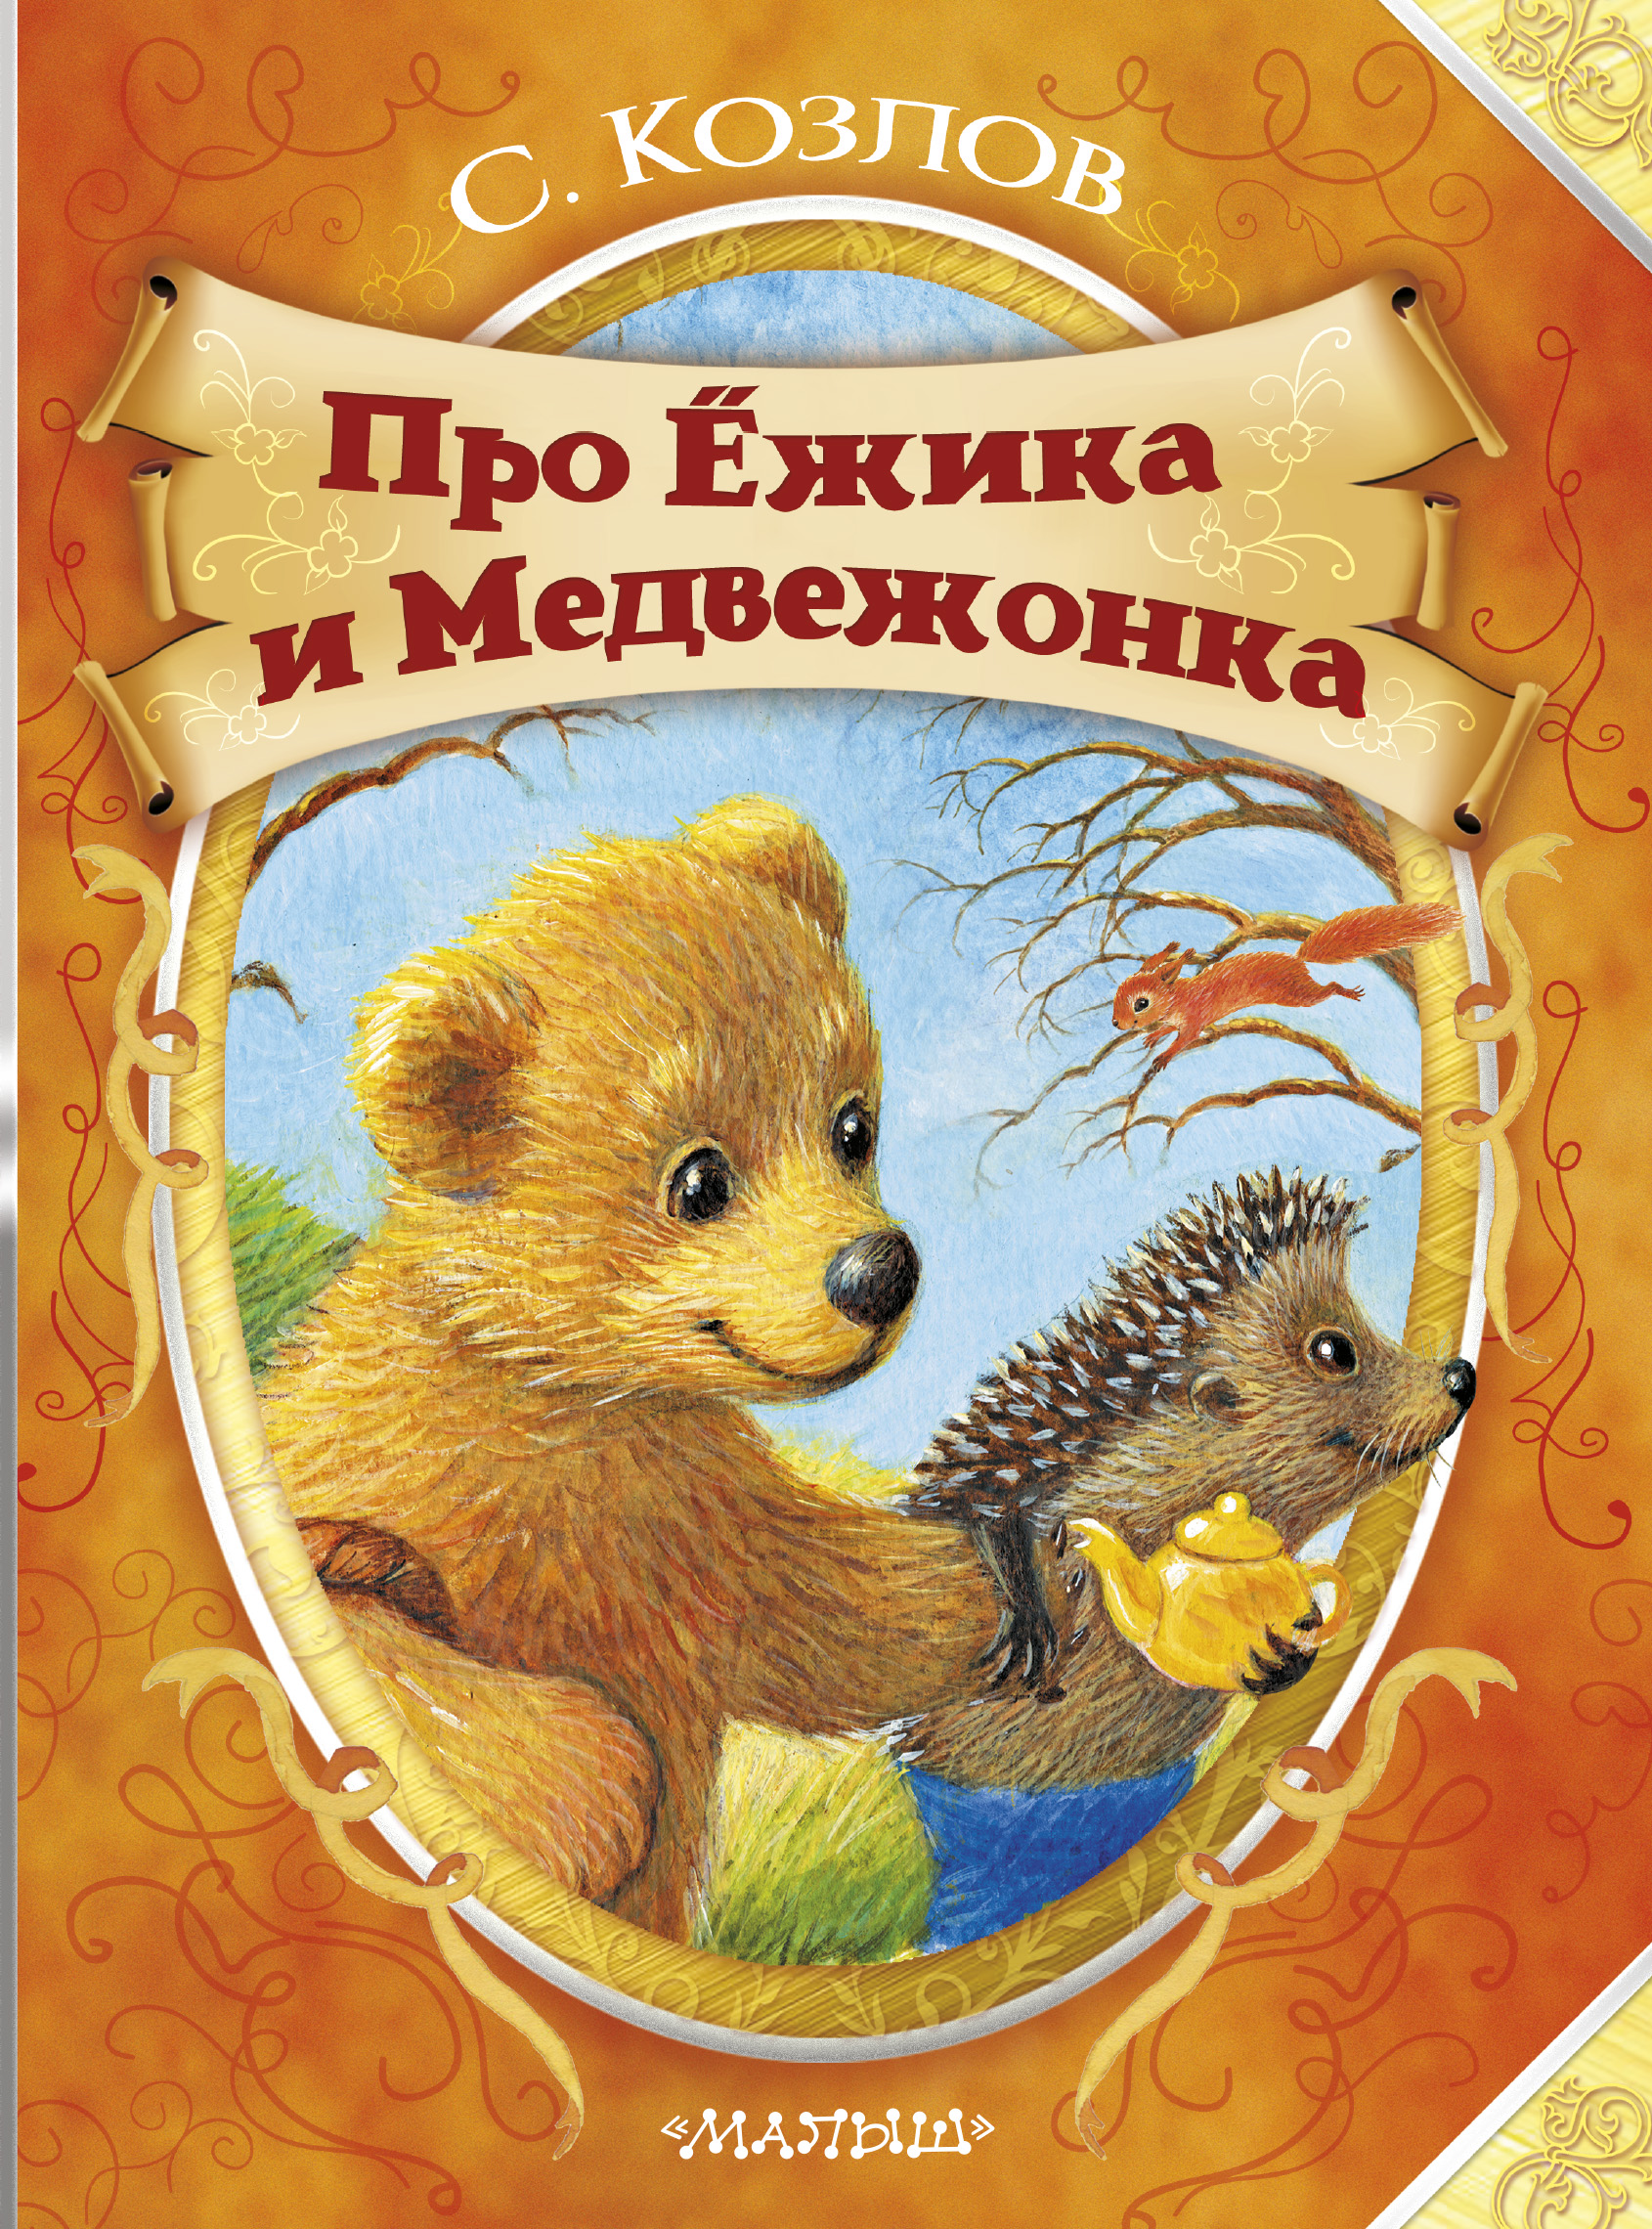 Ежик и медвежонок книга скачать